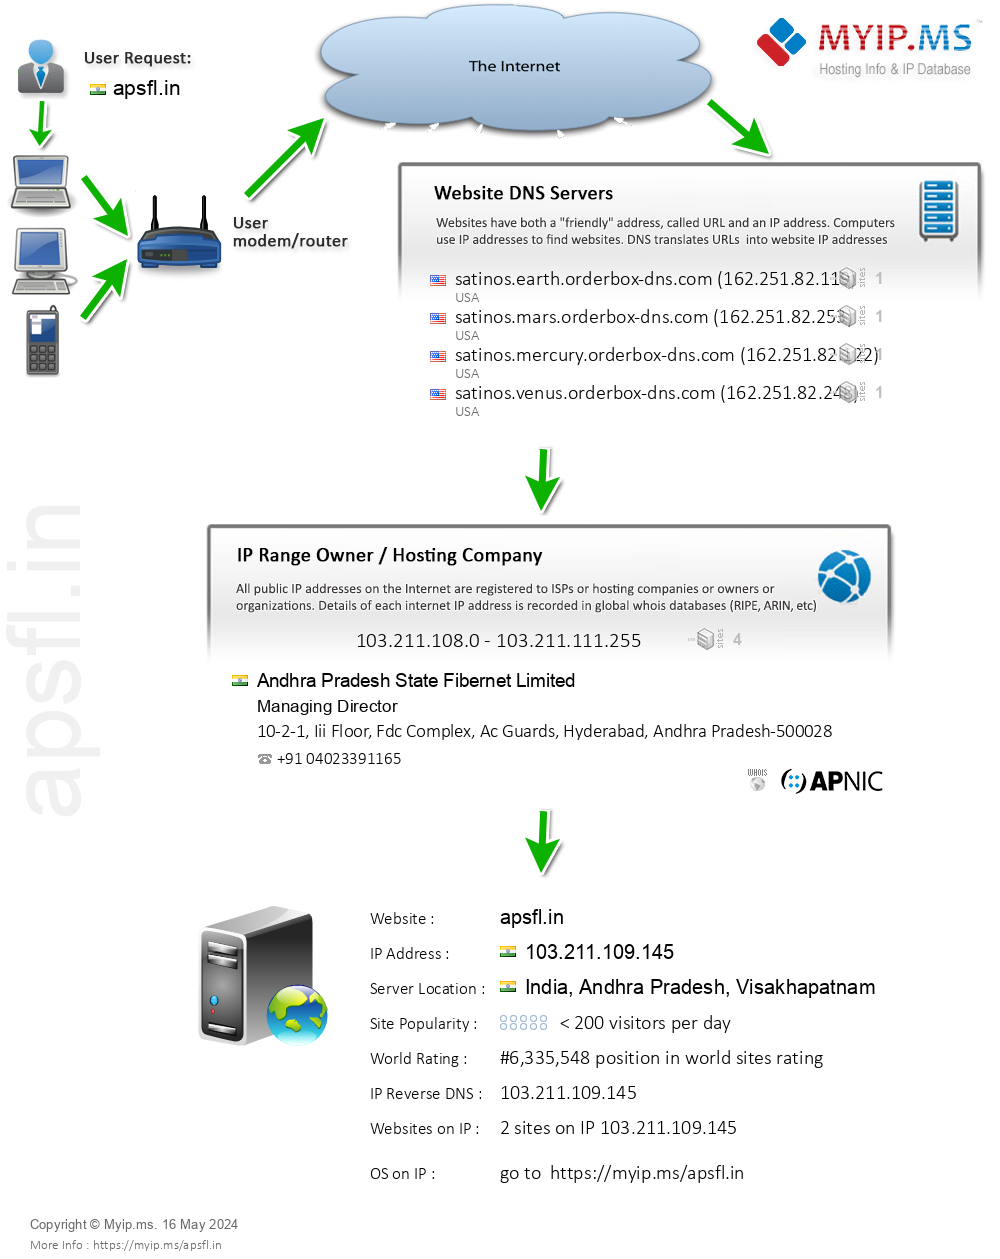 Apsfl.in - Website Hosting Visual IP Diagram